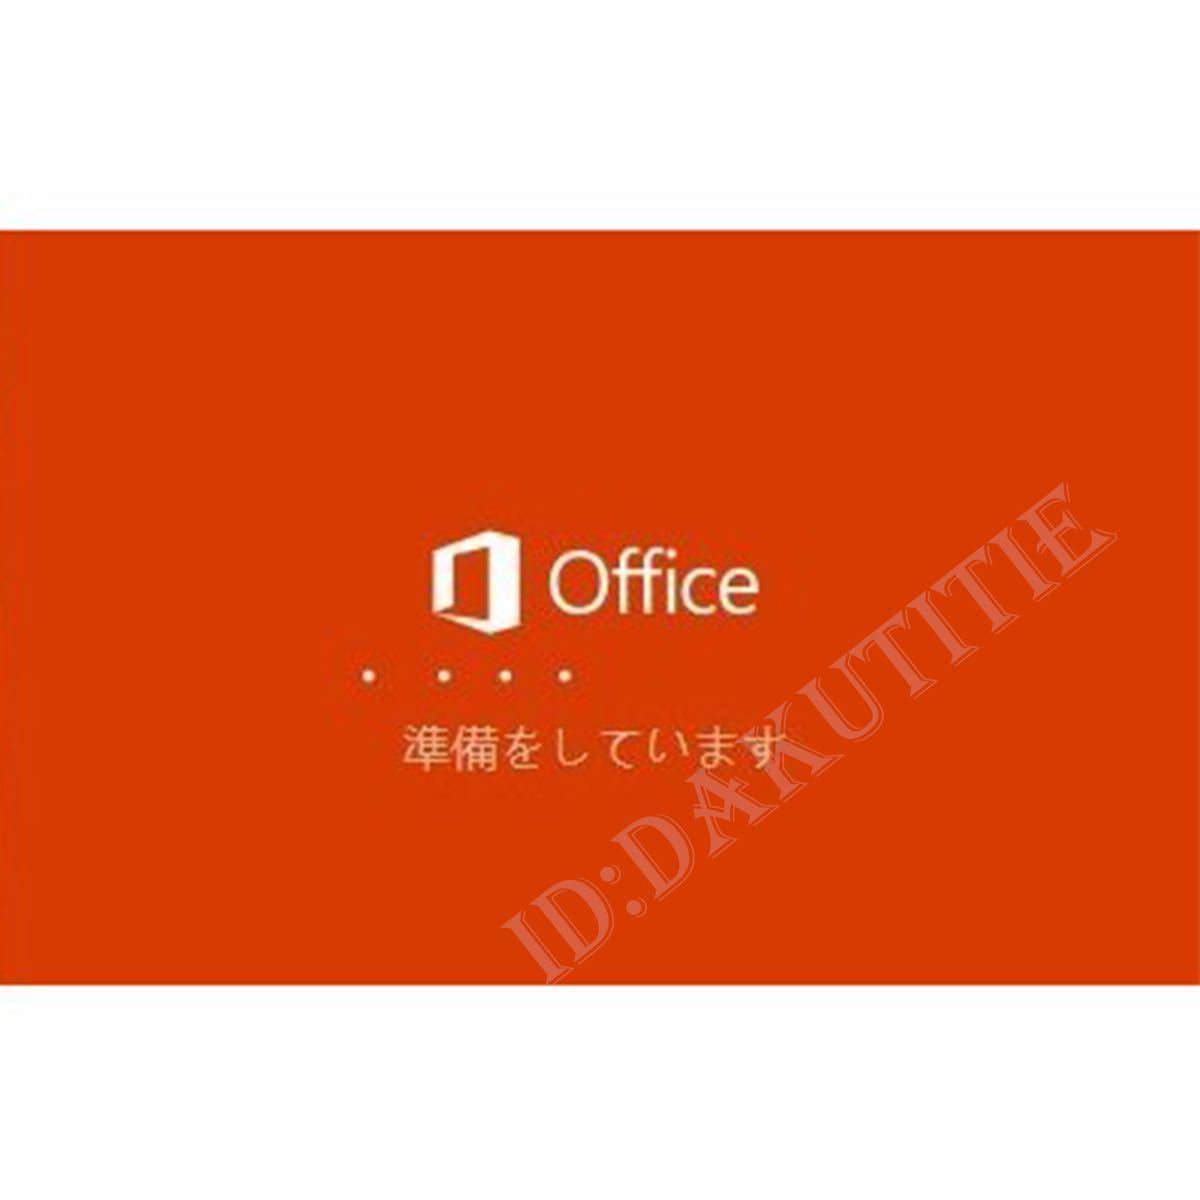 【即決あり】Office 2021 Professional Plus プロダクトキー 32/64bit版 日本語対応 手順書 保証有 特典付 永年ライセンス2